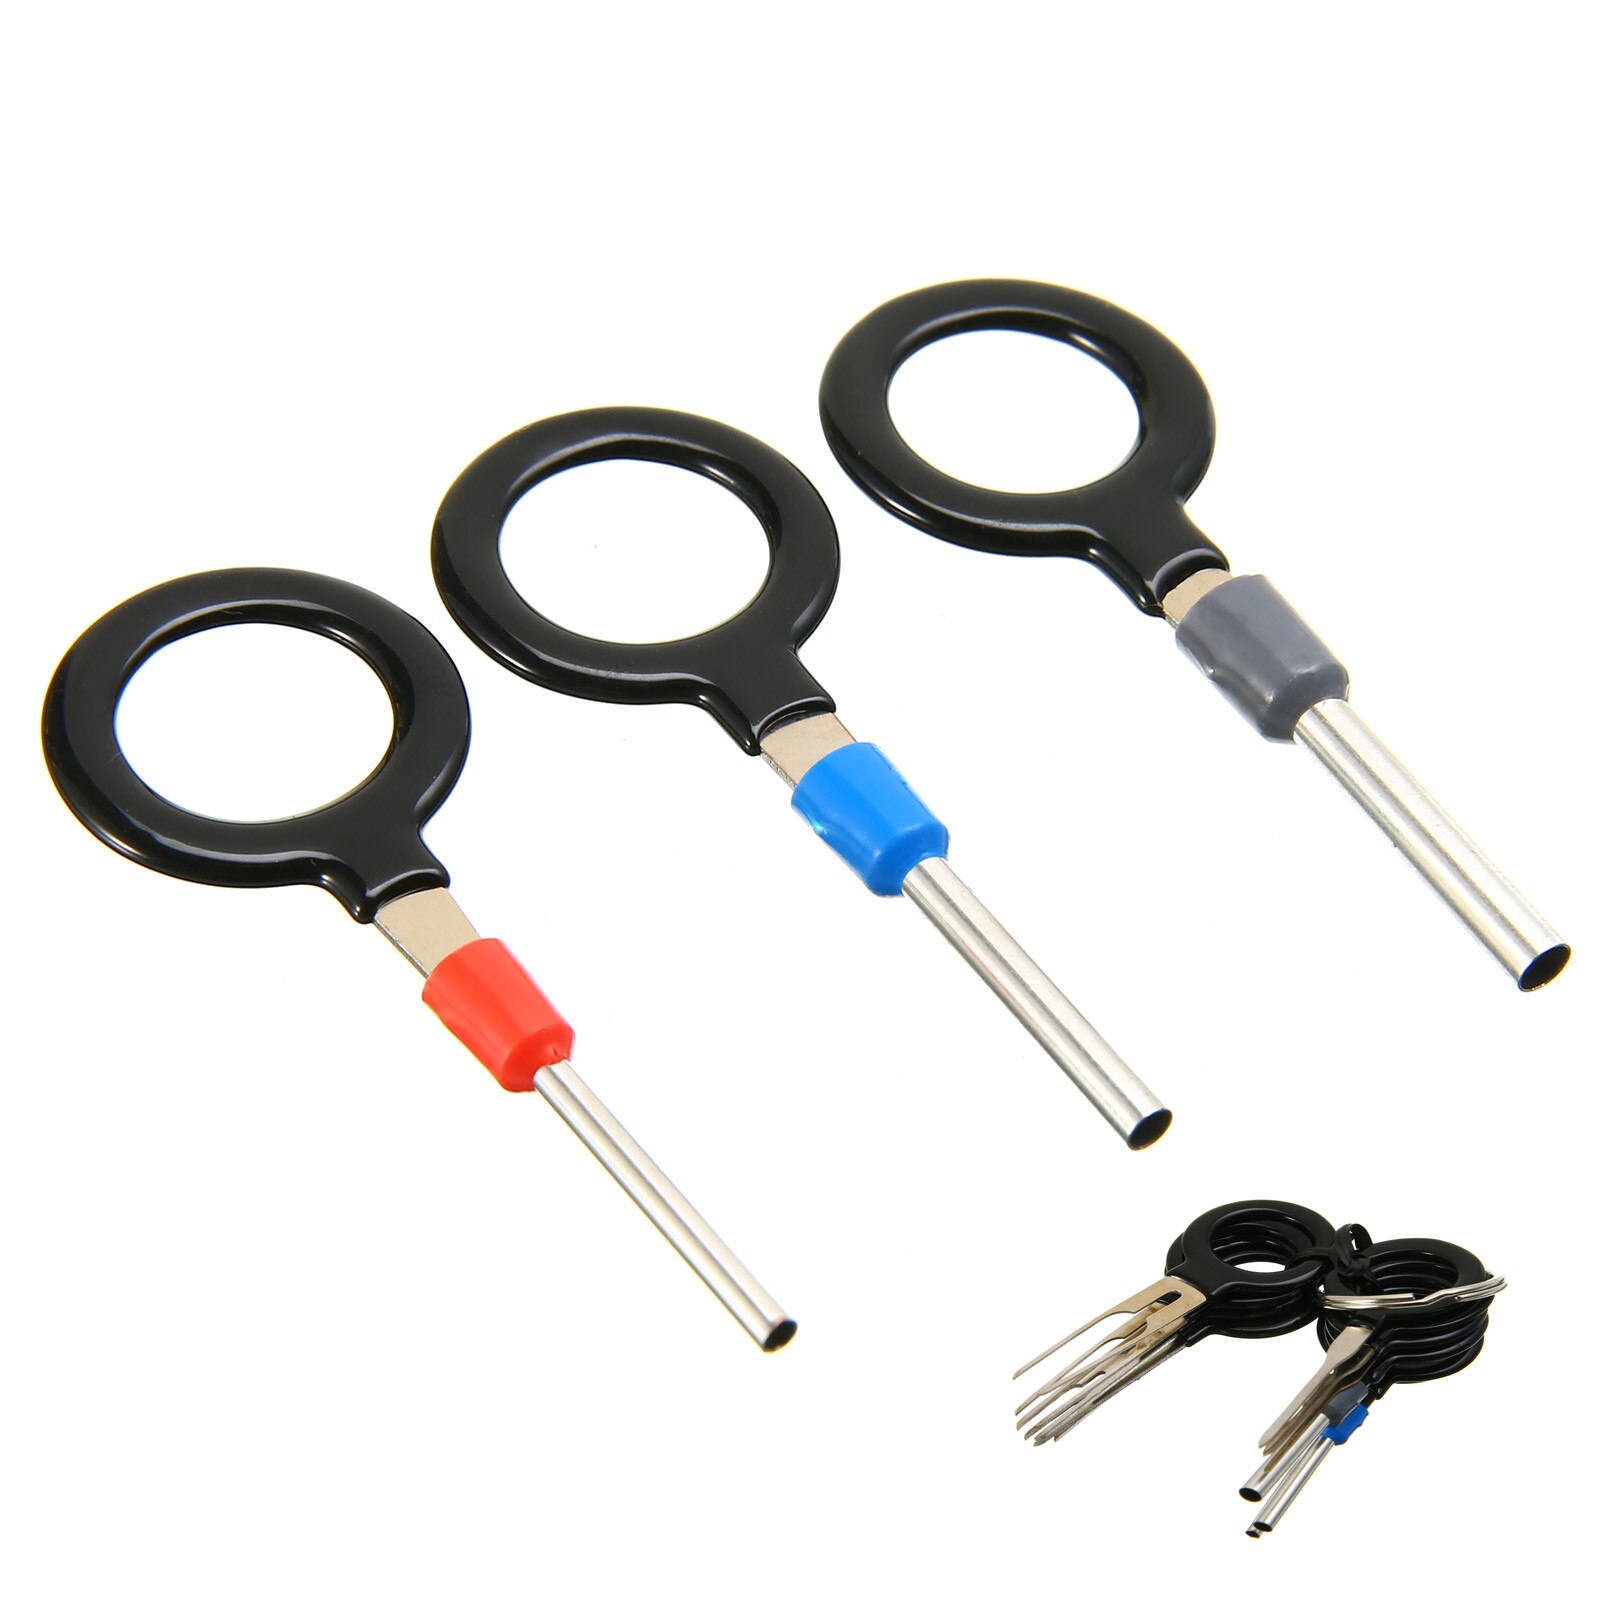 11 stk / sæt terminal fjernelsesværktøj nøgle pin ledning crimpstik pin udtrækkersæt elektriske nøgleværktøjer til bil